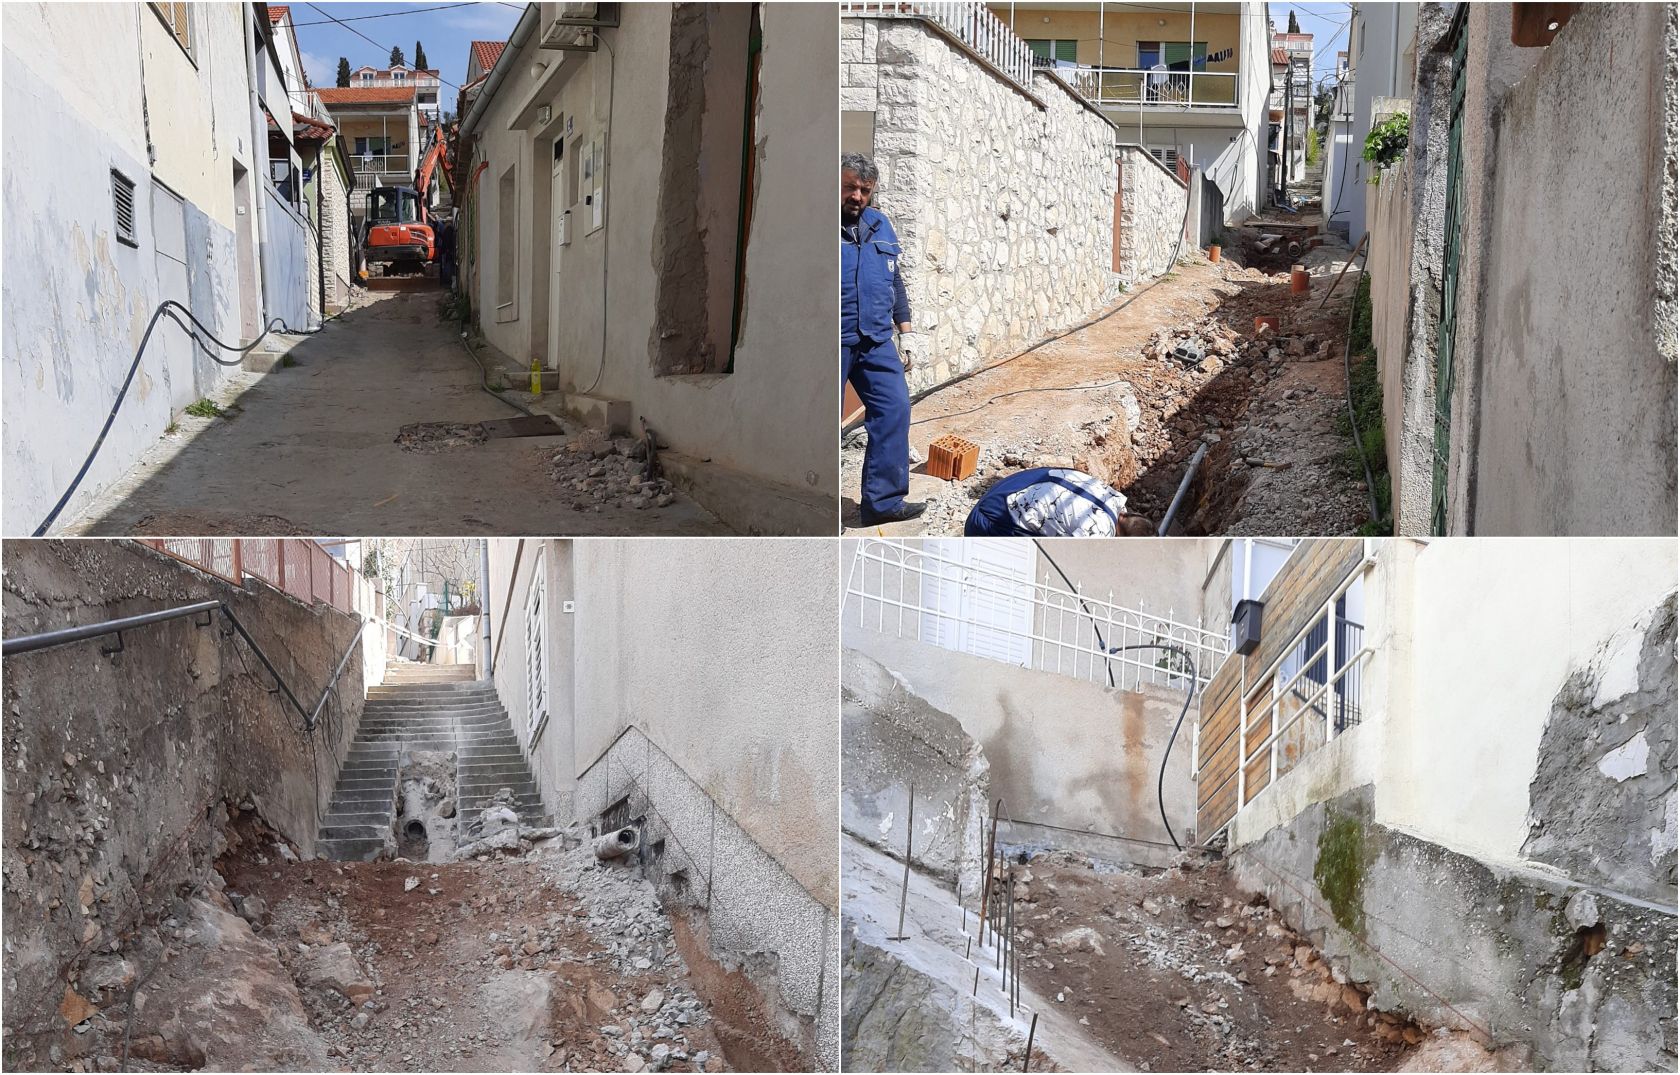   Komunalni radovi vrijedni 110 tisuća eura u gradskoj četvrti Građa i Baldekinu 